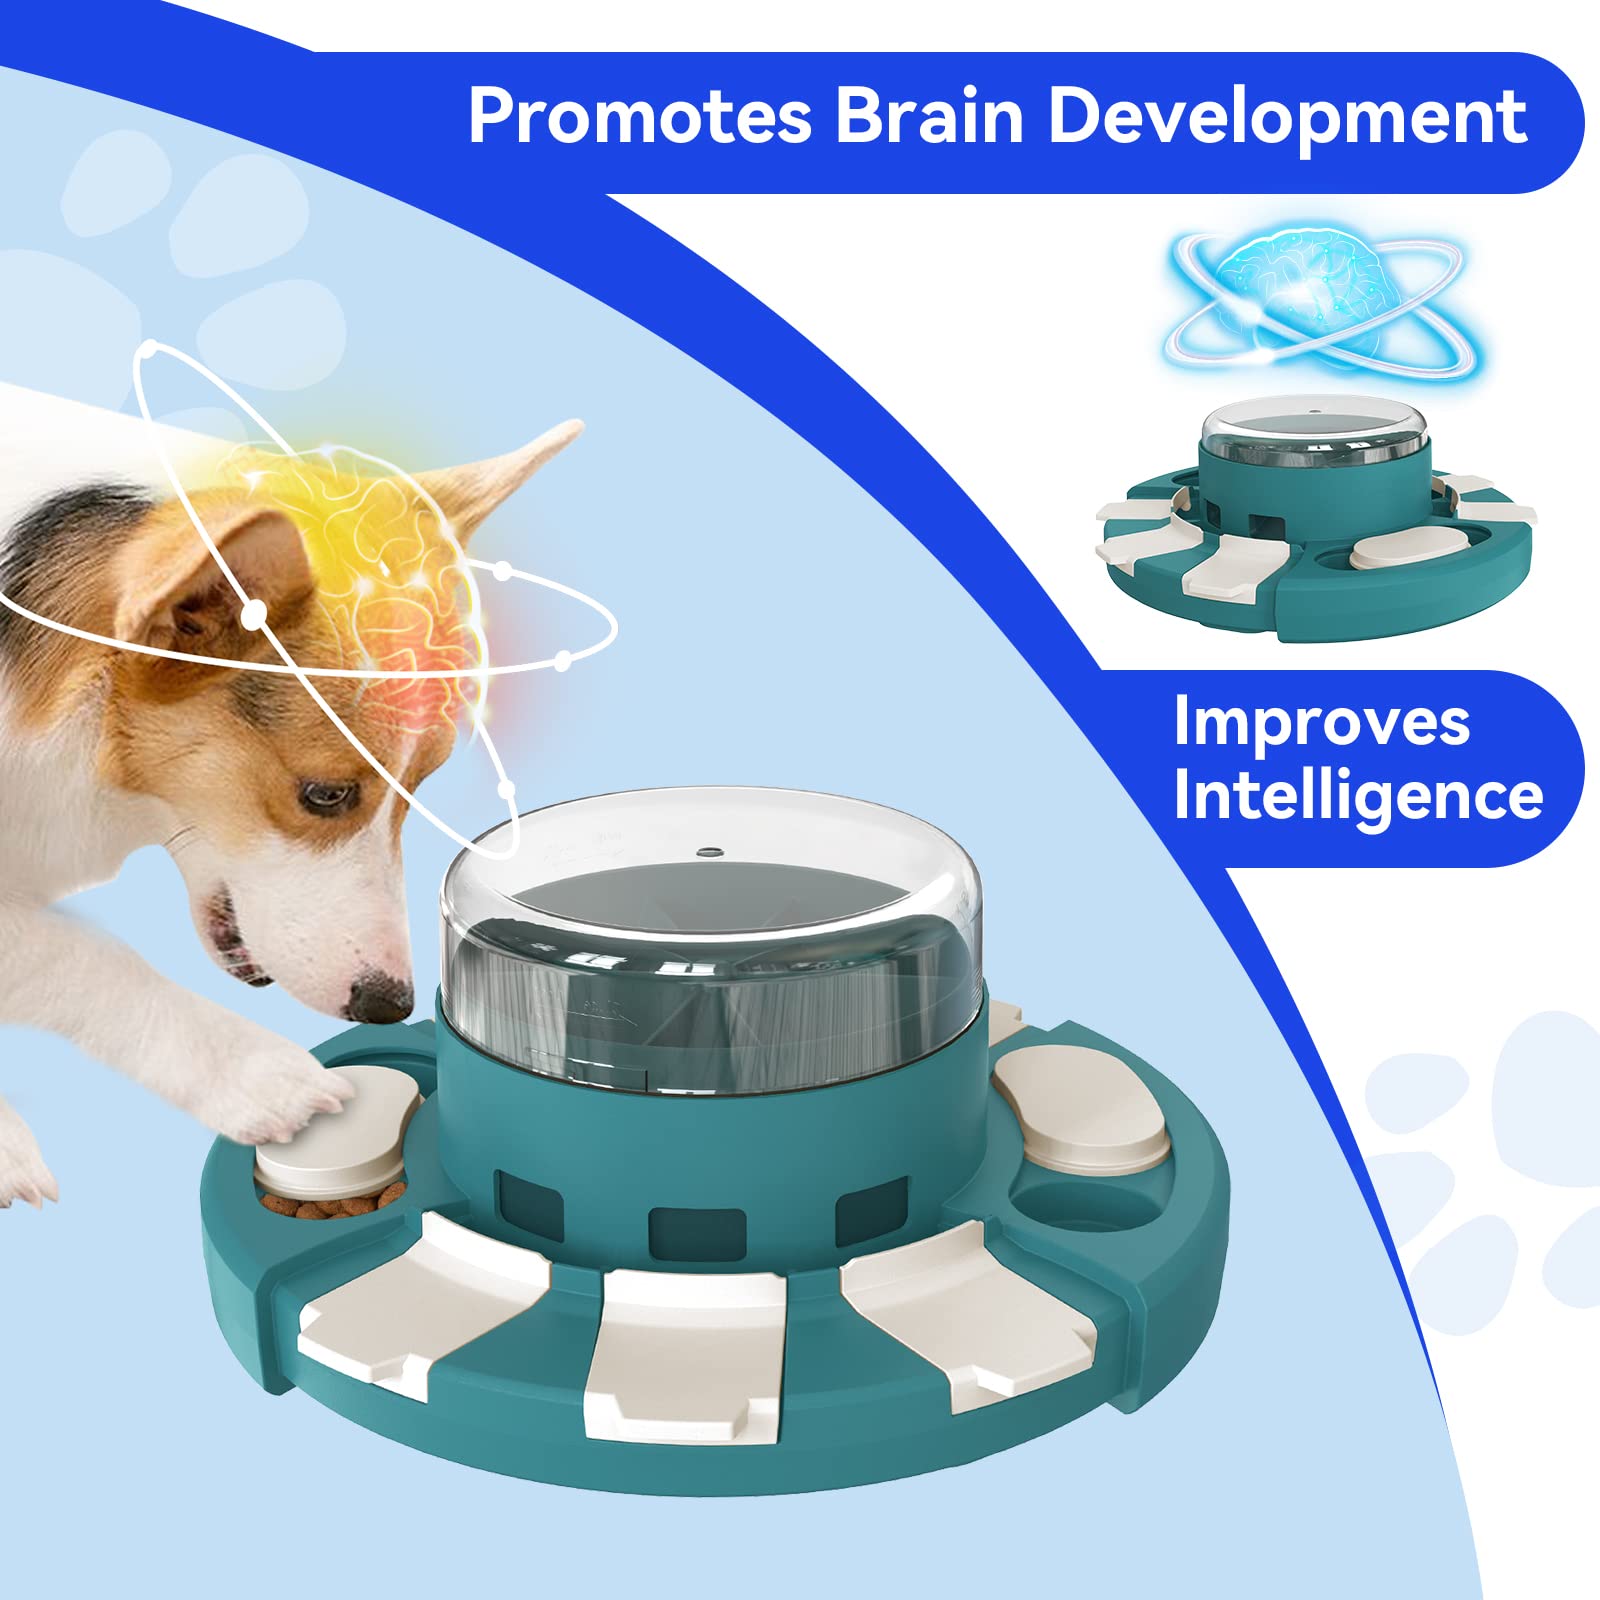 KADTC Puzzle Toys for Dog Boredom and Mentally Stimulating Slow